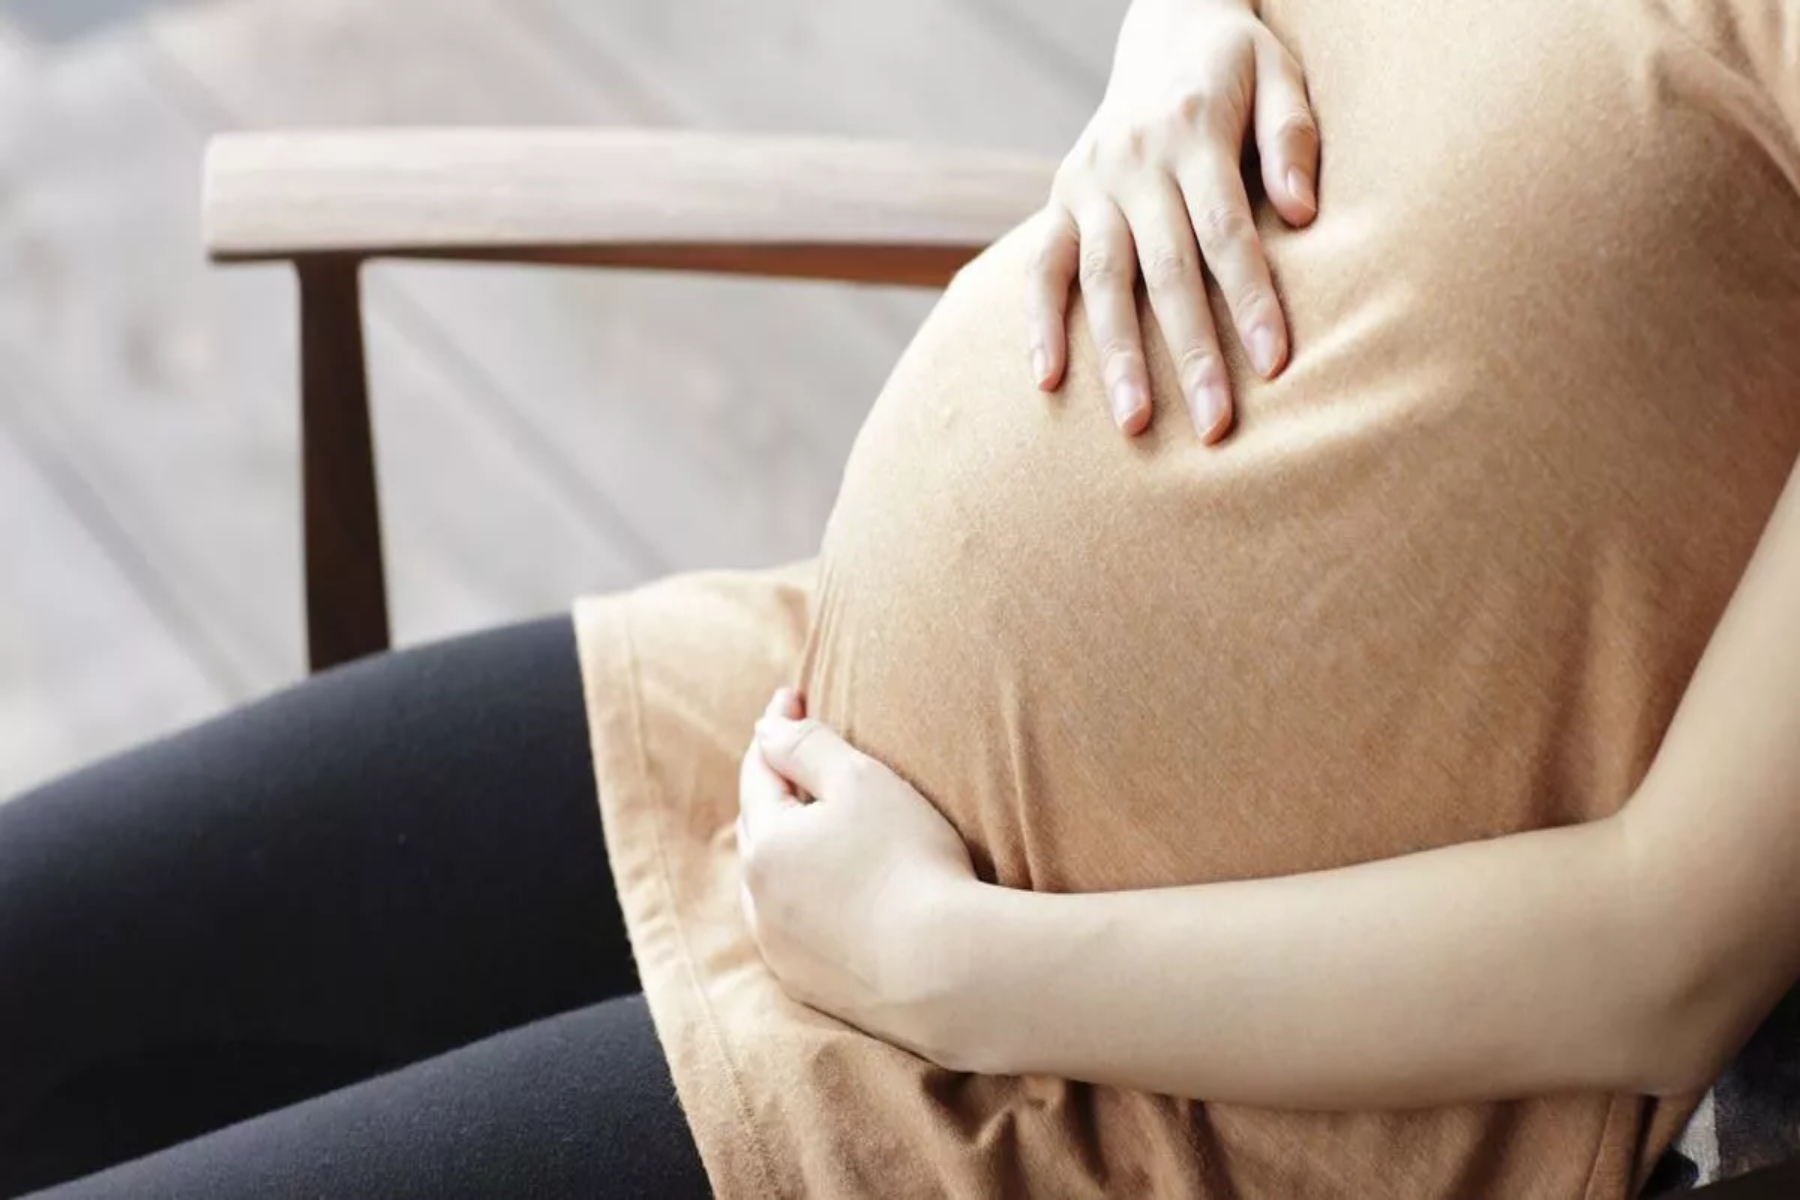 Στάσεις σώματος: Ποιες είναι οι καθιστικές στάσεις που μπορούν να σας βλάψουν αν είστε έγκυος;